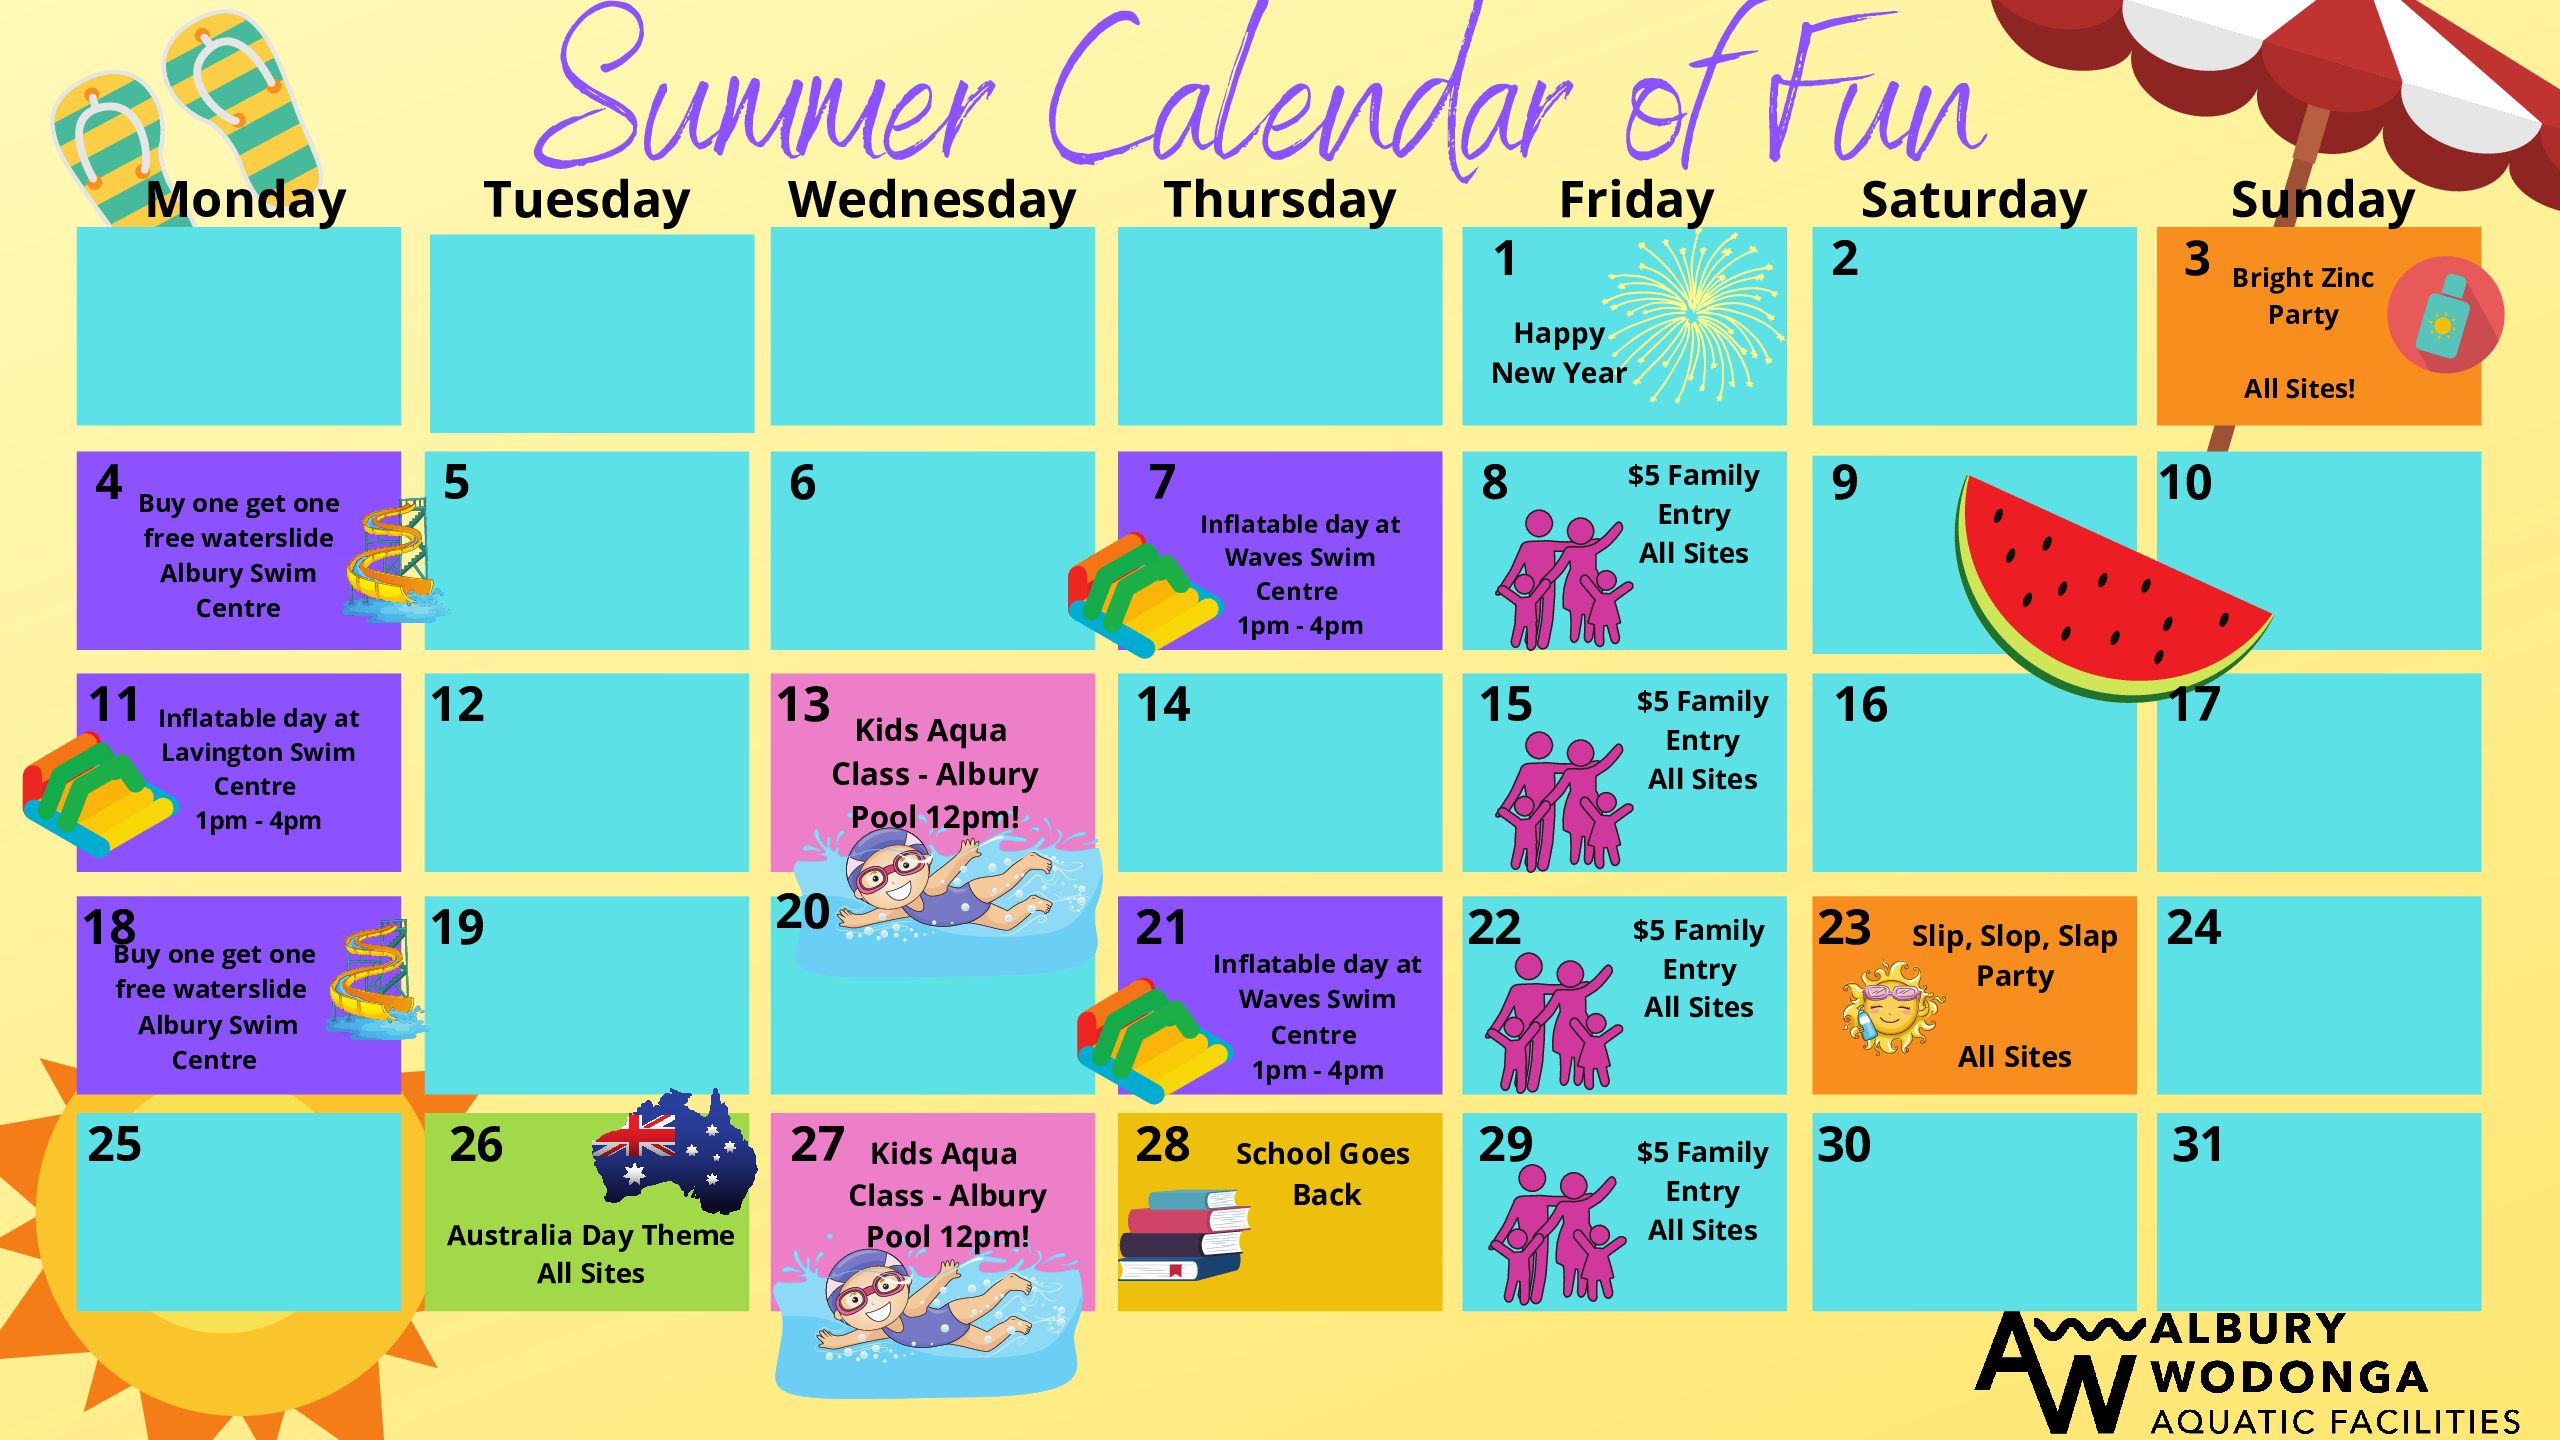 Summer Calendar of Fun 2021